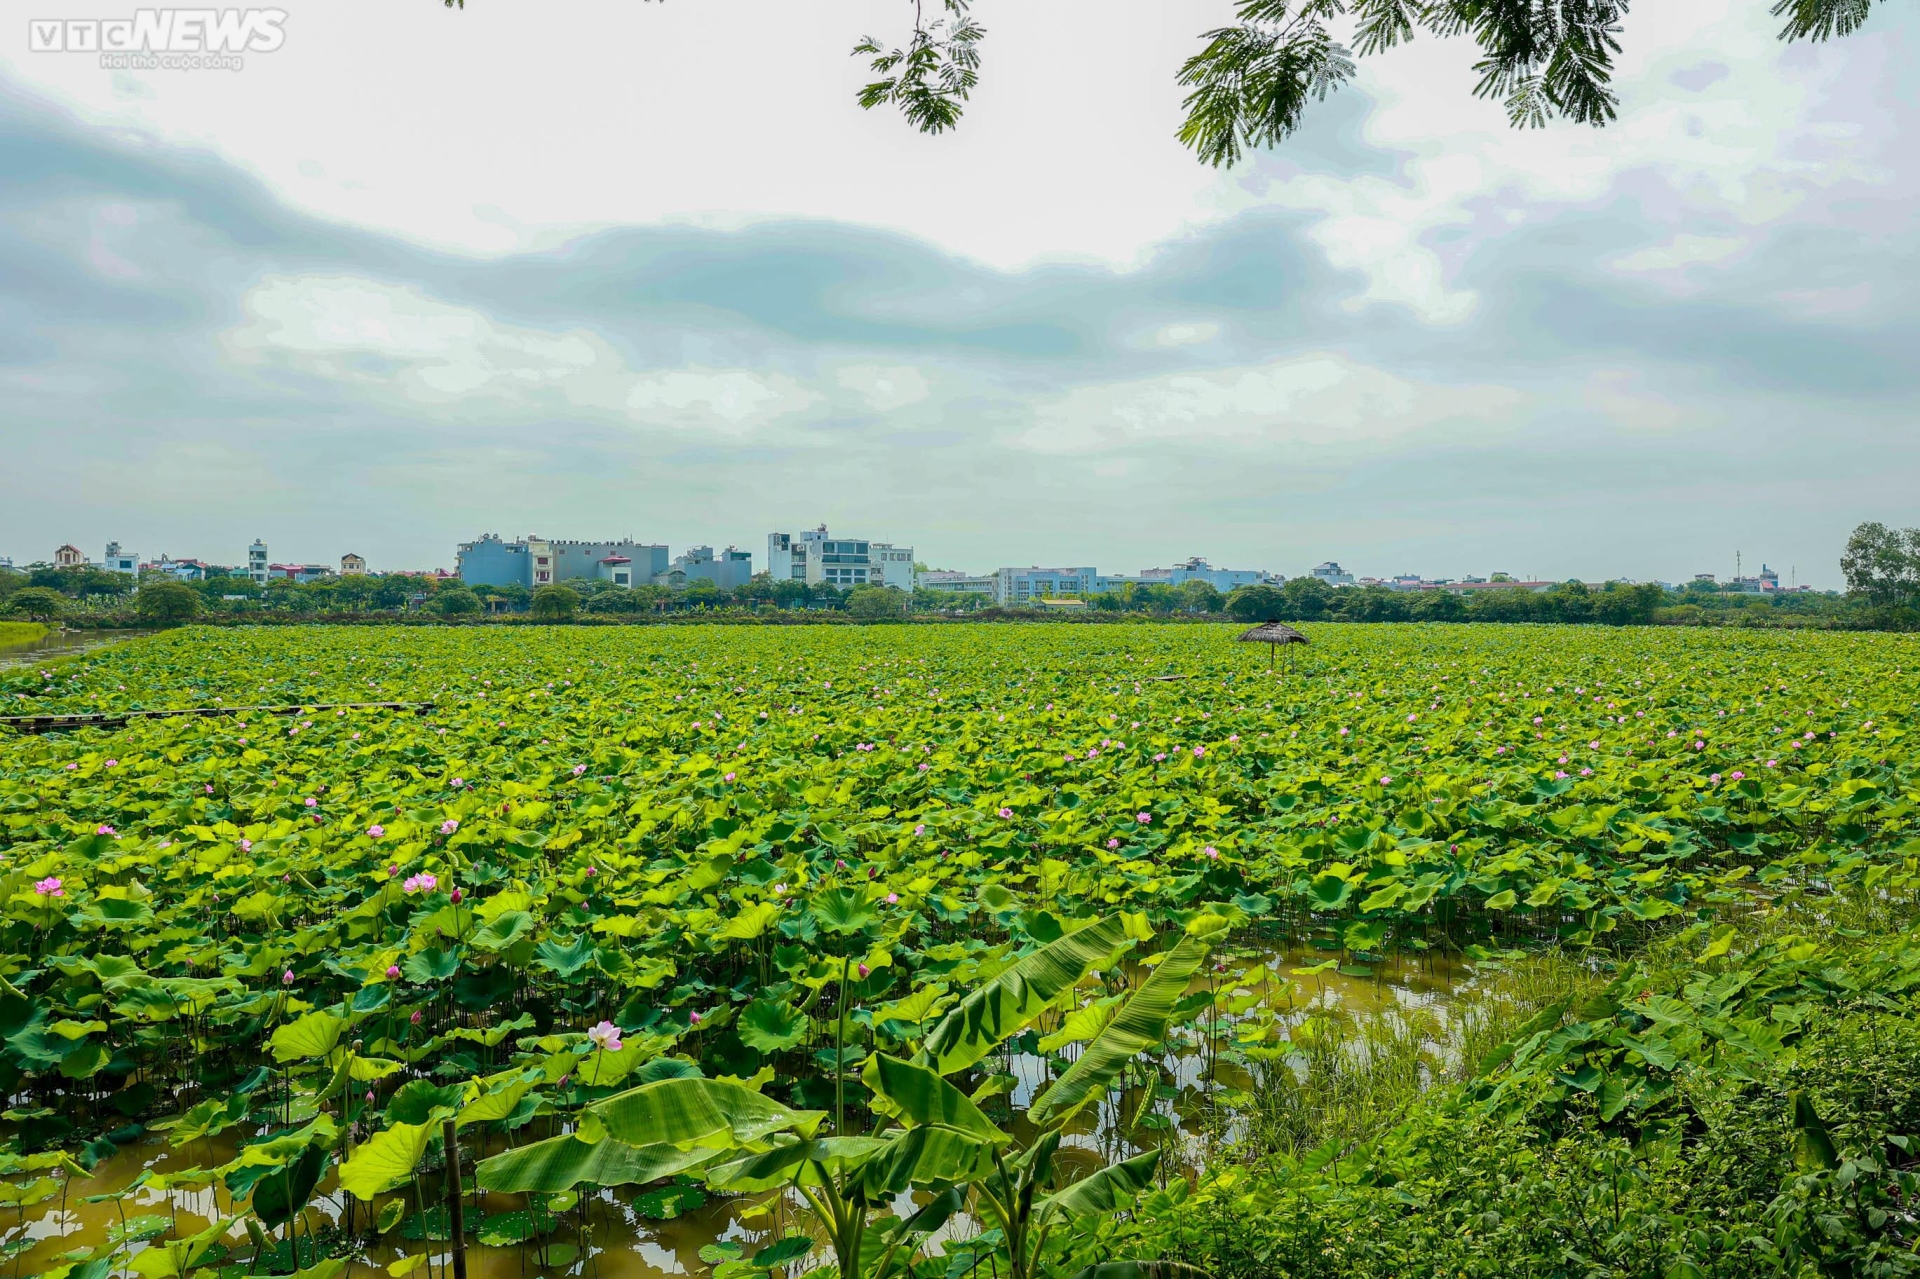 Ngắm cánh đồng sen đẹp hút hồn tại khuôn viên Học viện Nông nghiệp Việt Nam - Ảnh 1.